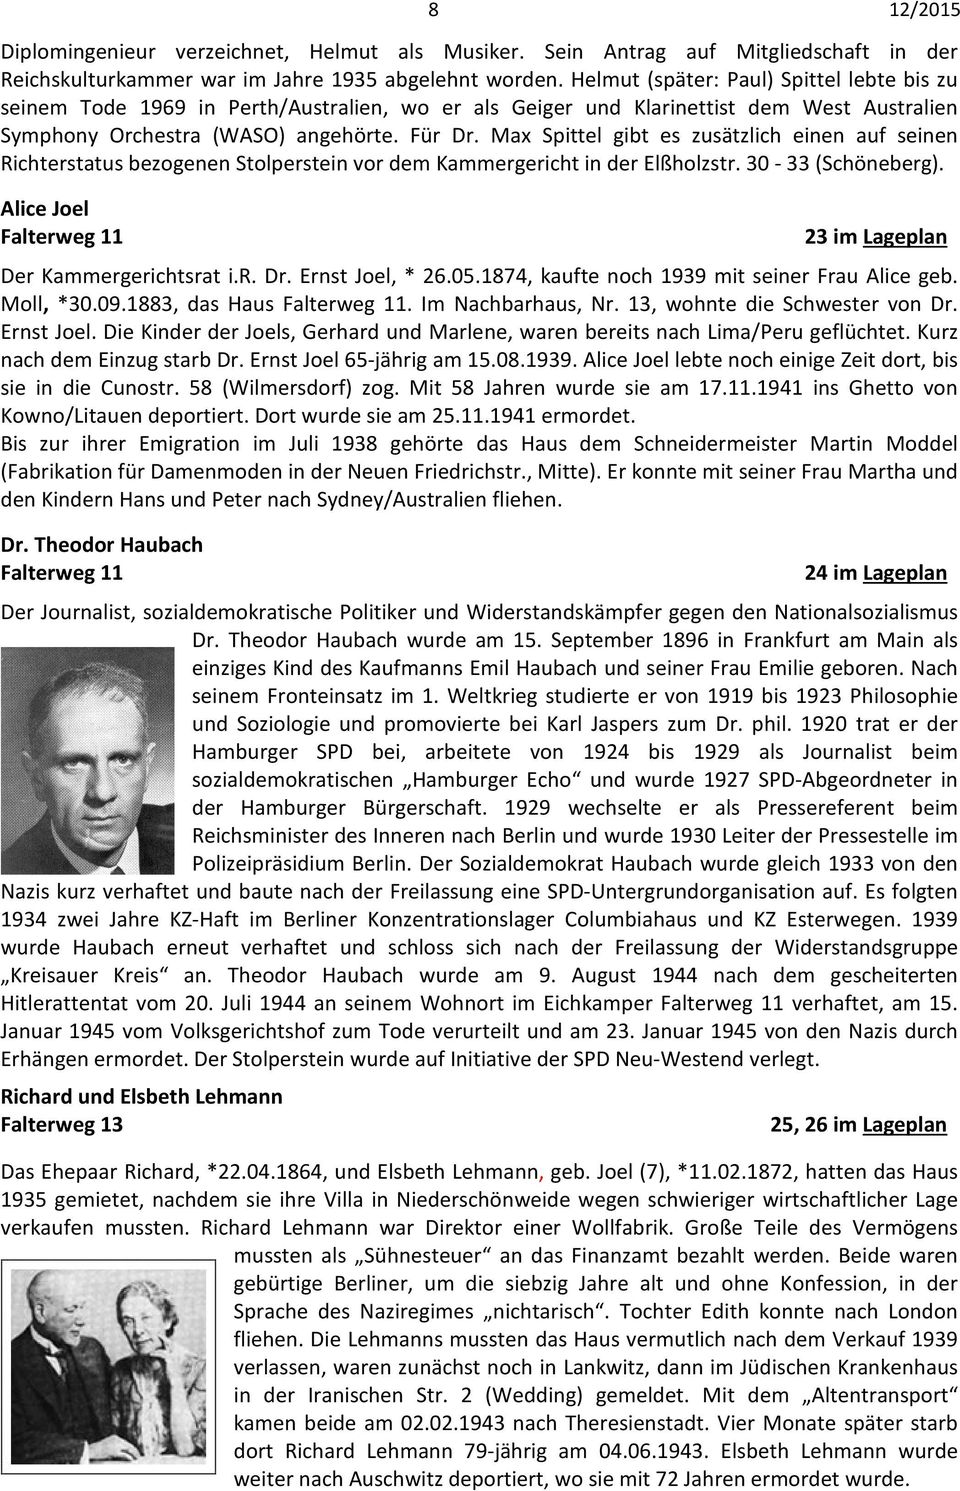 Max Spittel gibt es zusätzlich einen auf seinen Richterstatus bezogenen Stolperstein vor dem Kammergericht in der Elßholzstr. 30-33 (Schöneberg).